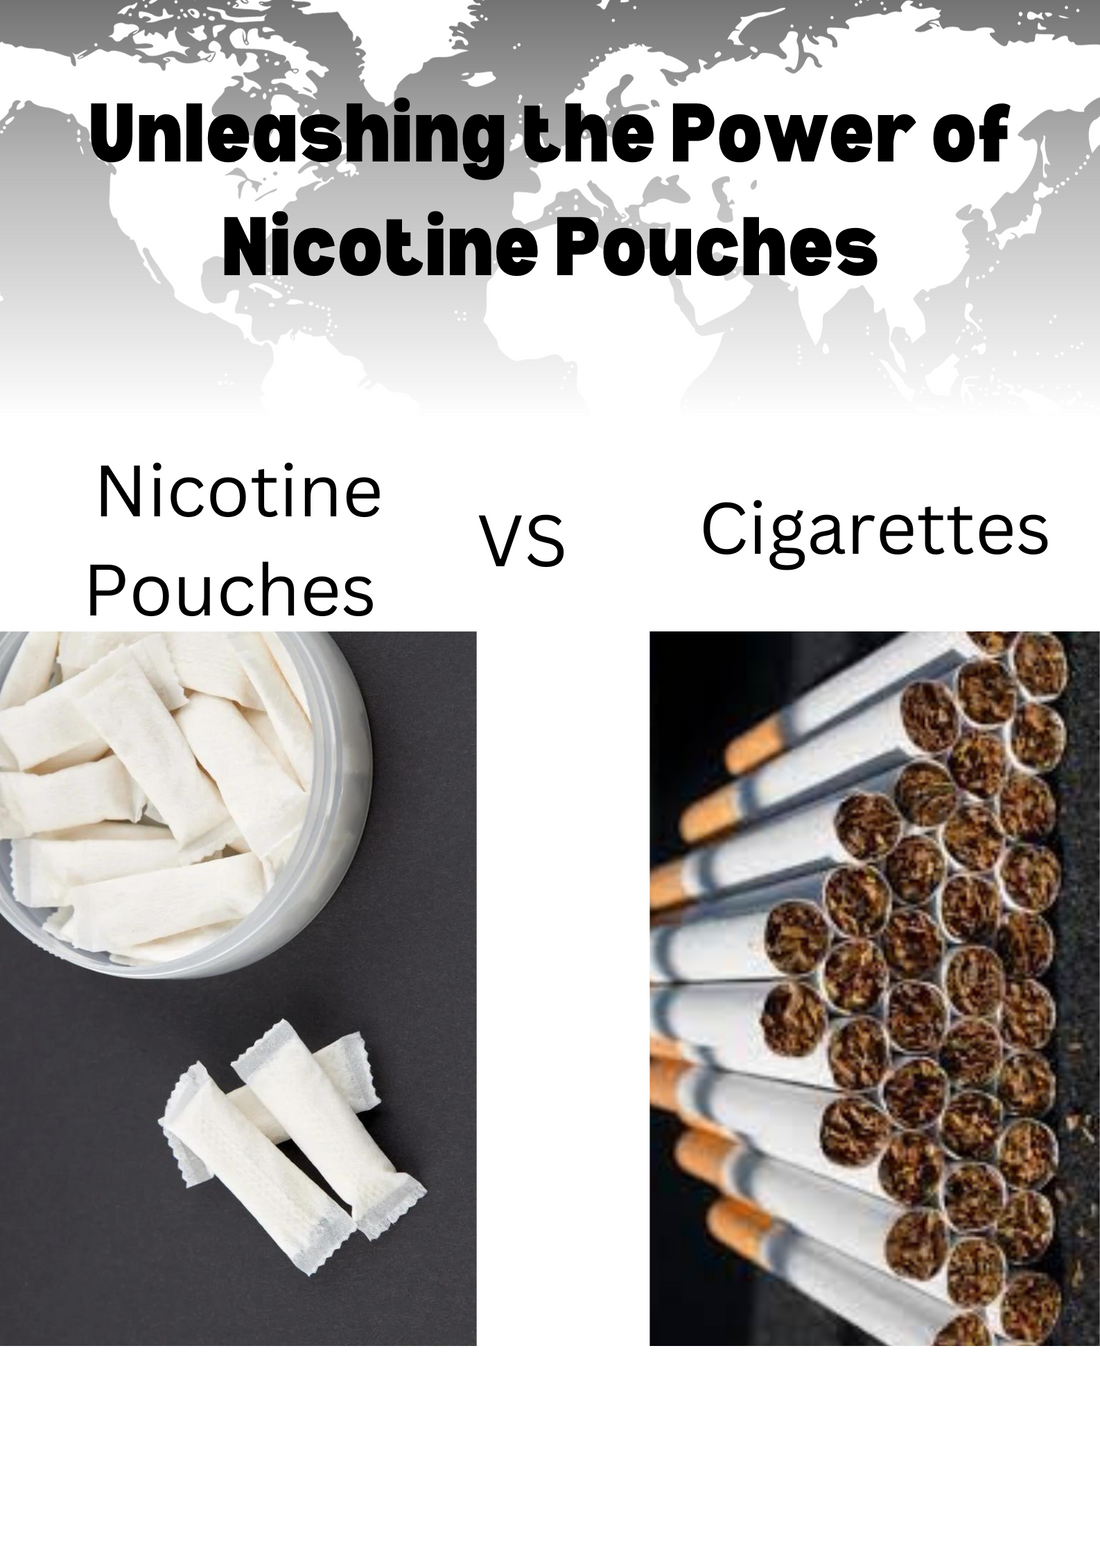 Nicotine pouches vs, Cigarettes